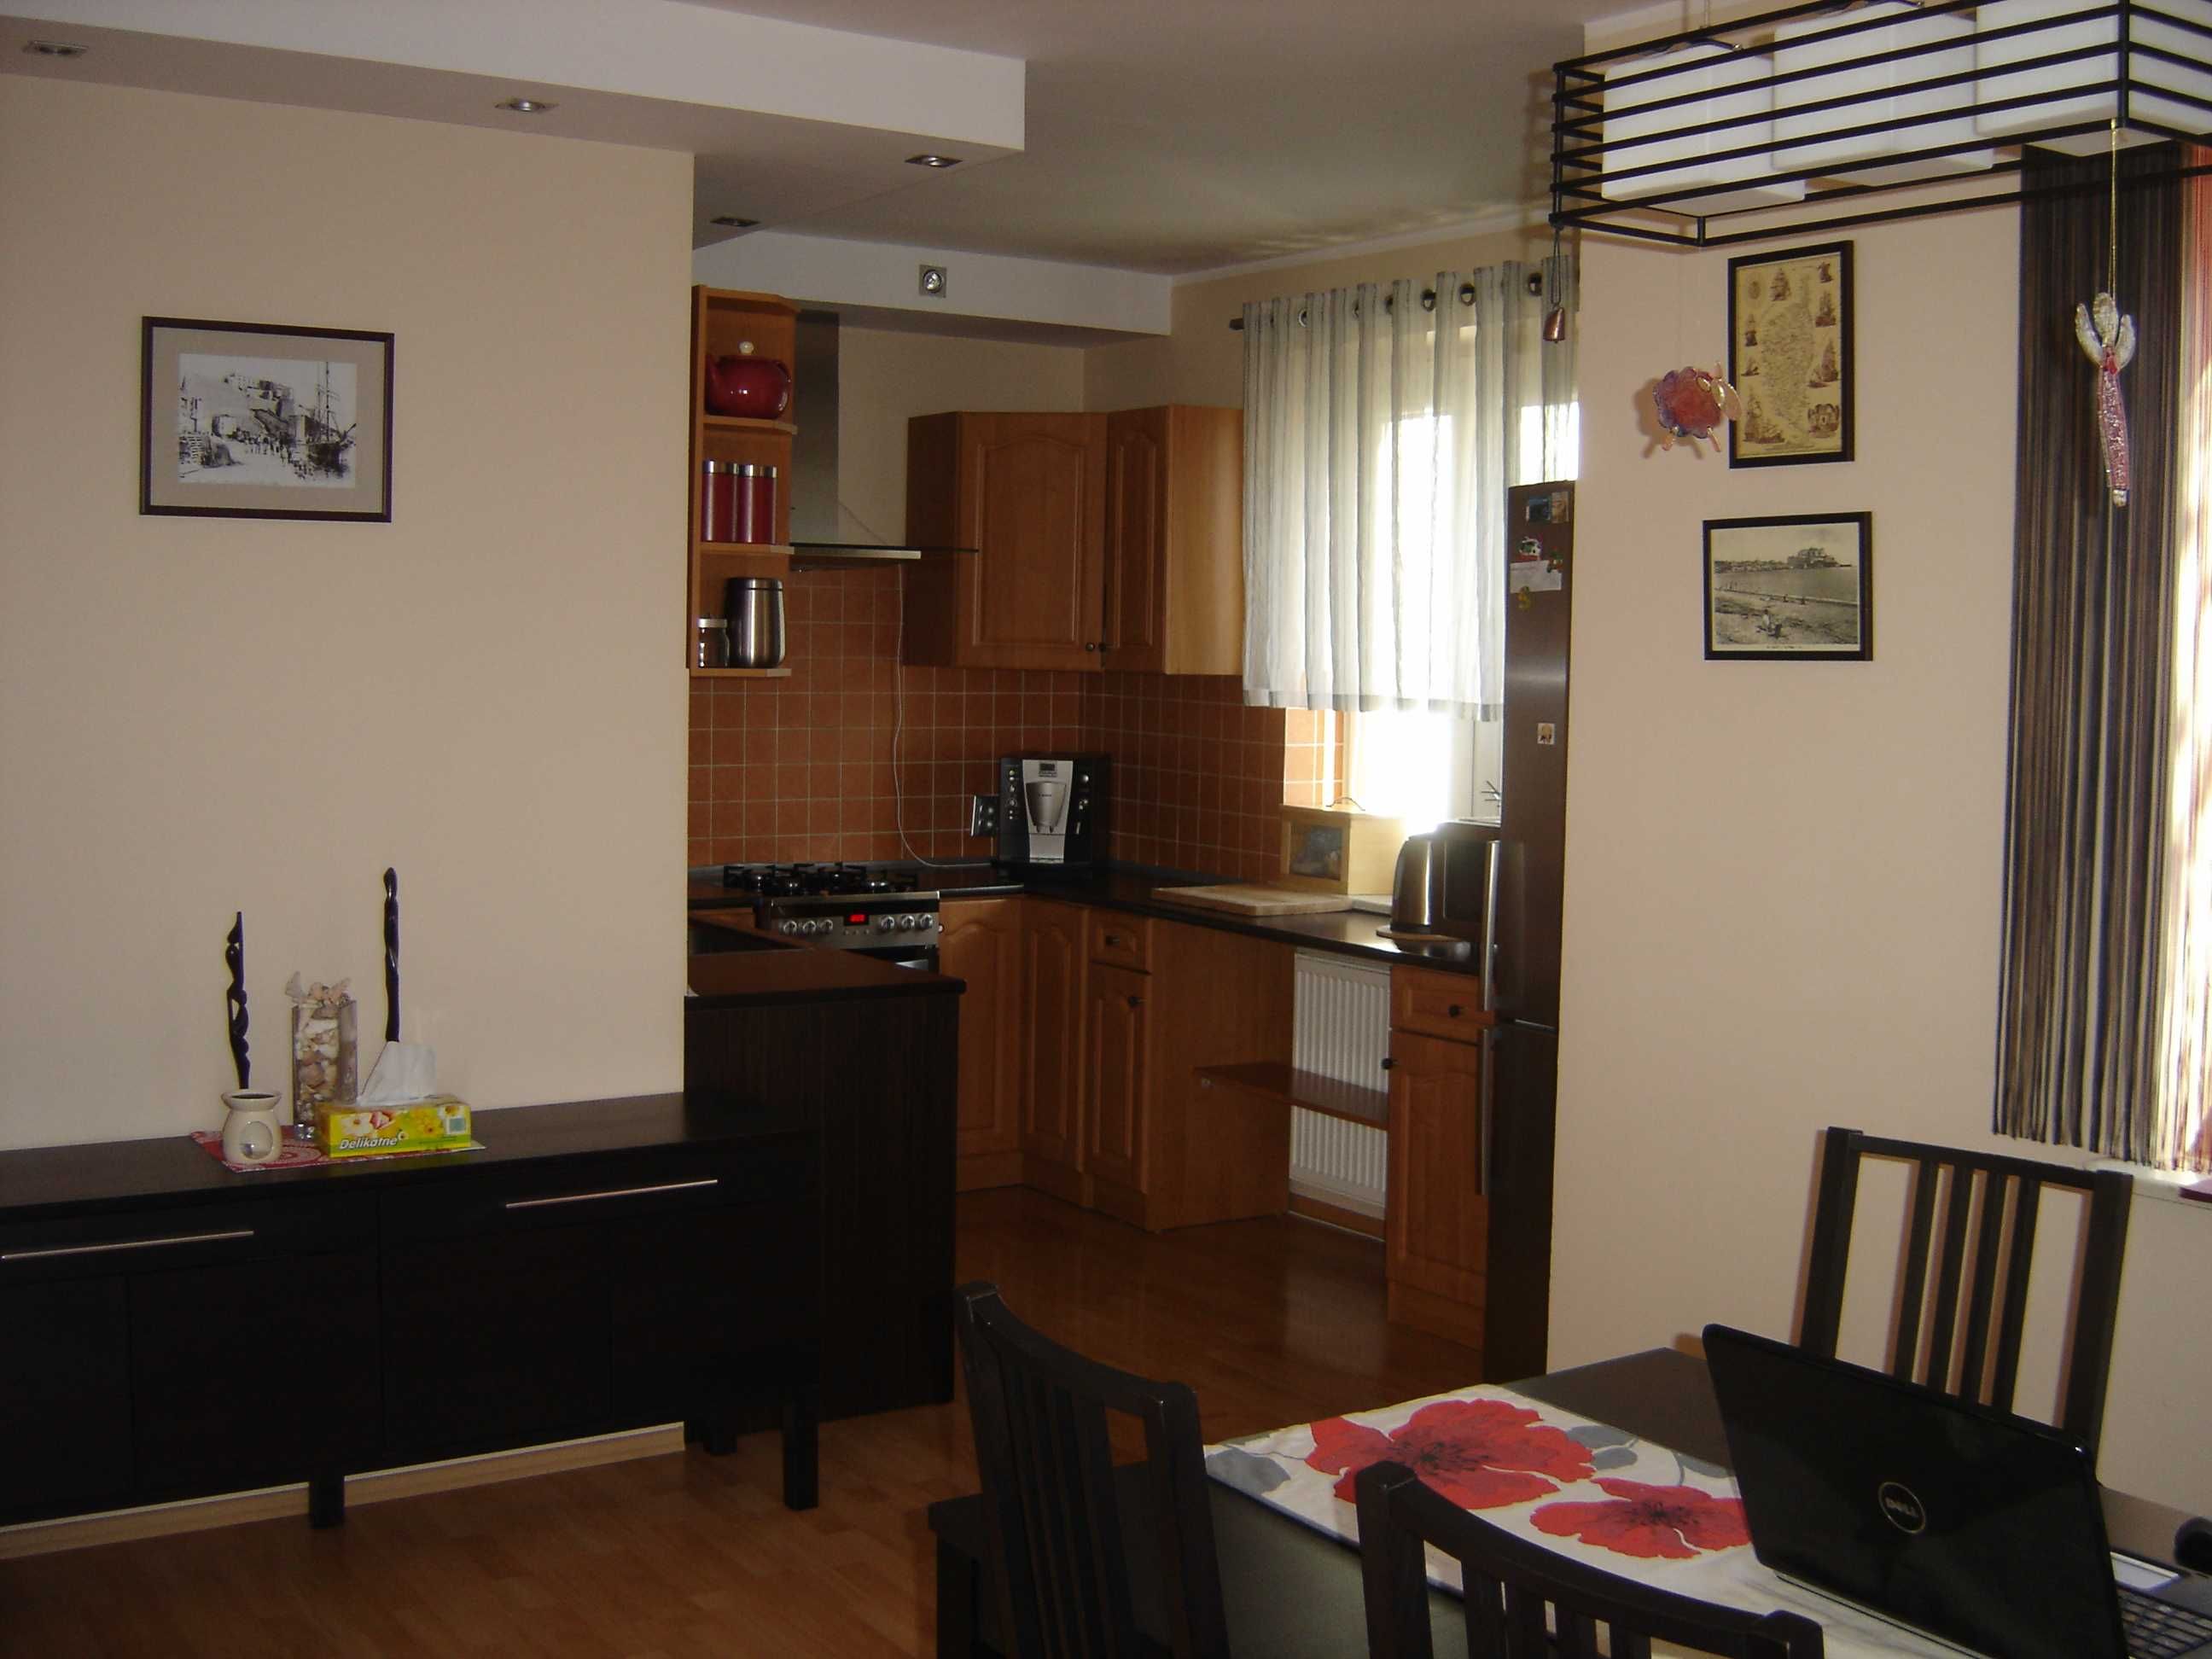 Wynajmę mieszkanie 3-pokojowe, 72 m2, garaż, ul. Słowiańska